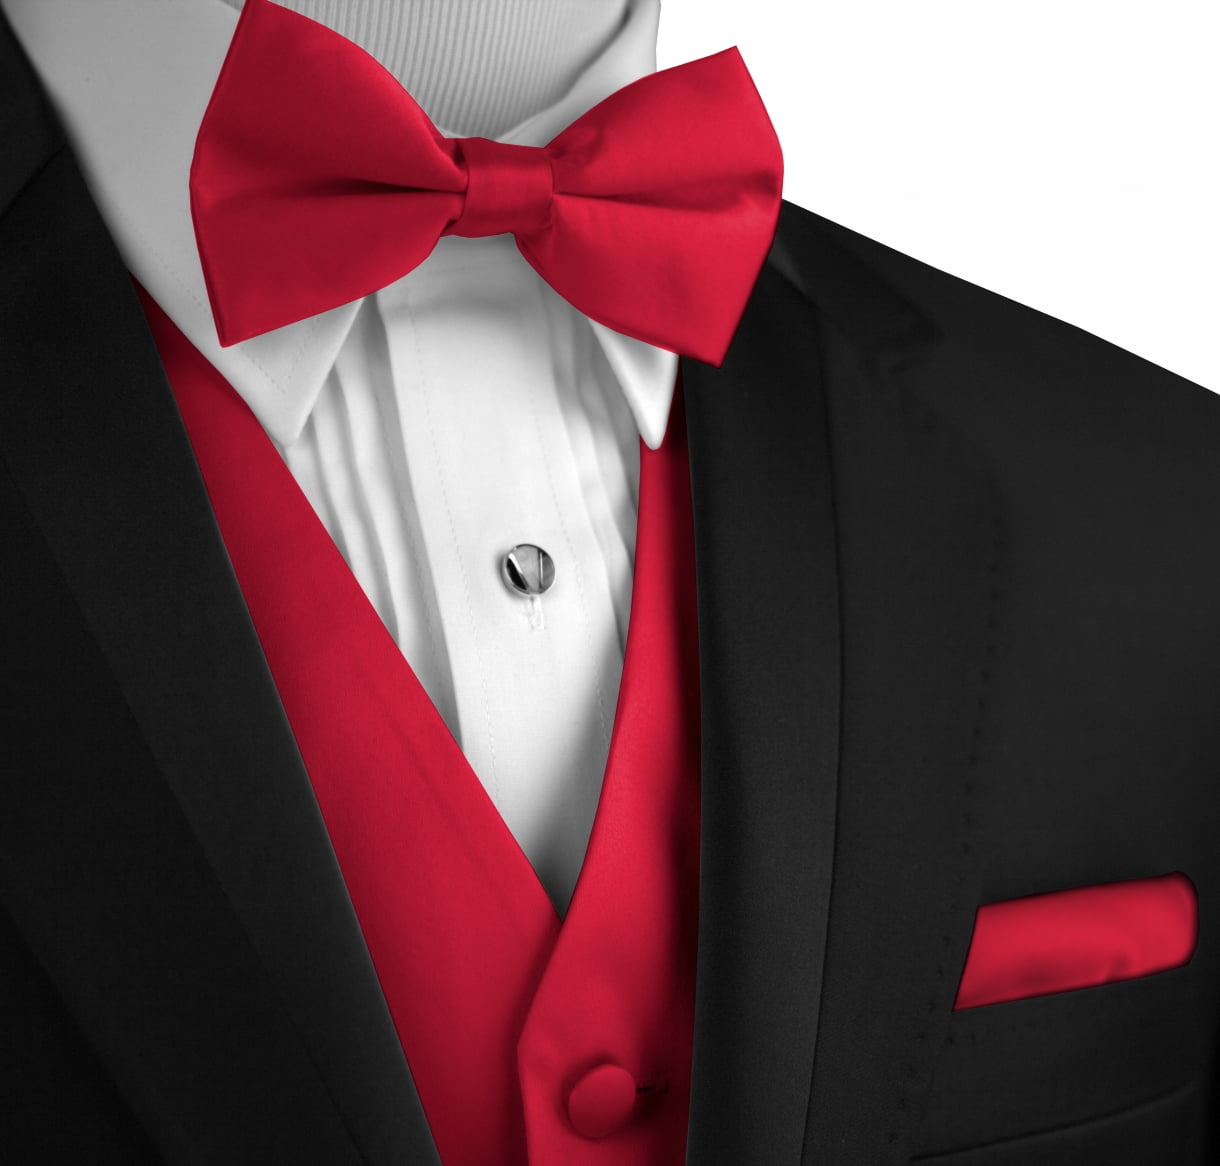 New Men's red formal vest Tuxedo Waistcoat pre-tied neck tie and hankie 